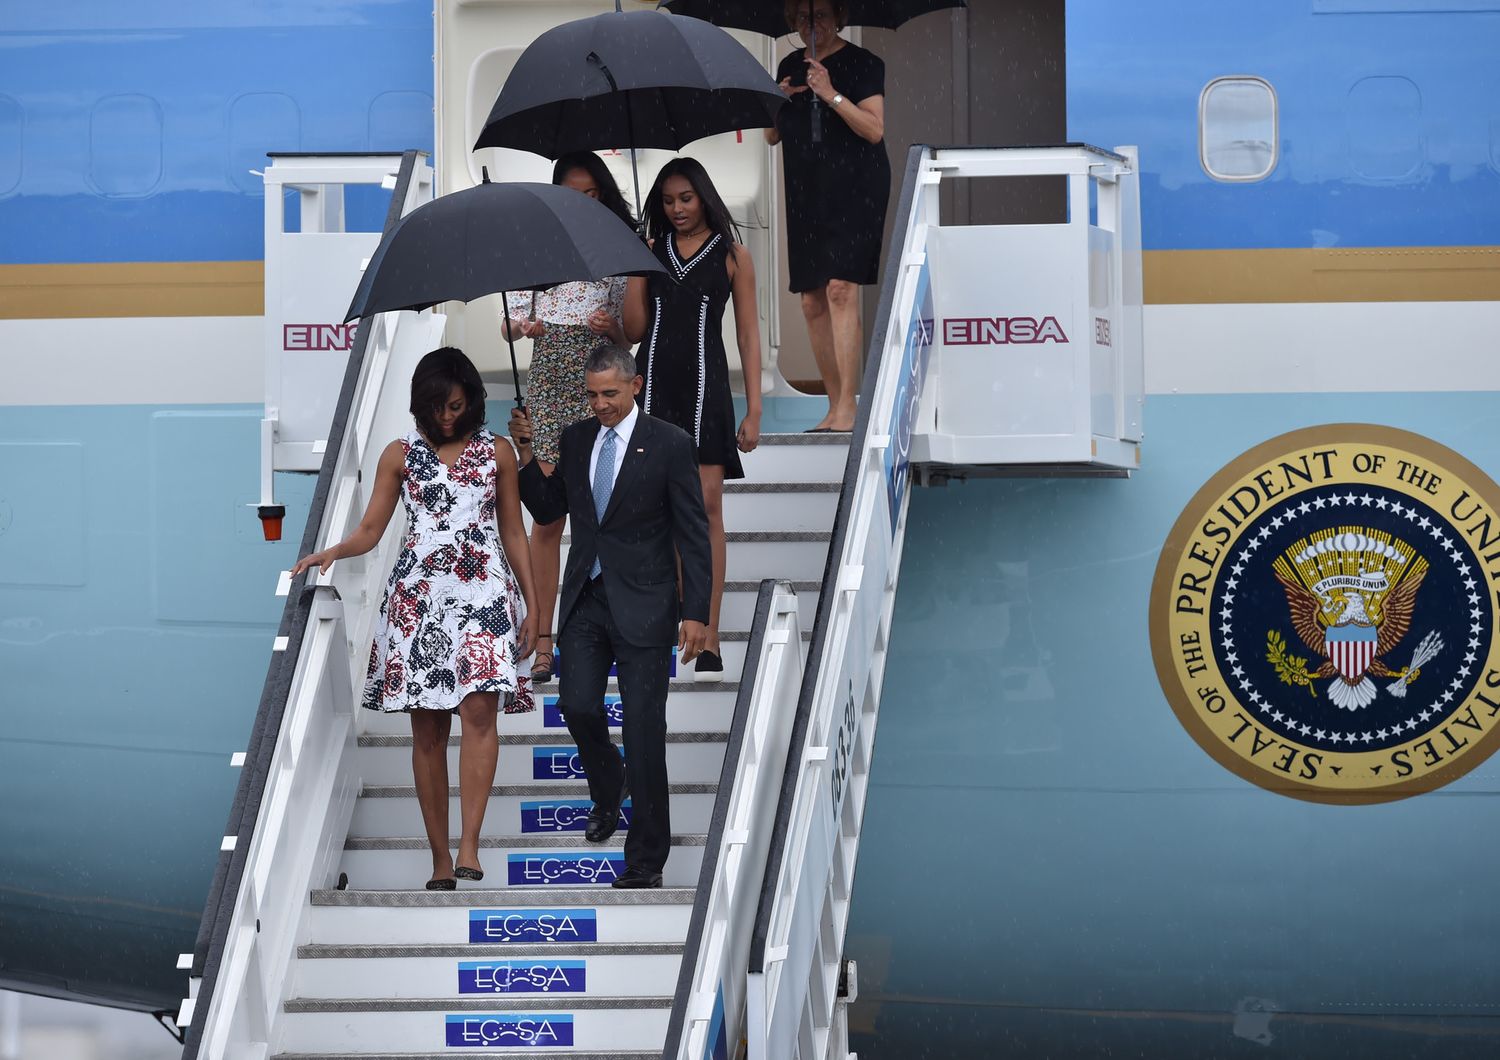 La famiglia Obama scende dall' aereo presidenziale sotto una fitta pioggia tropicale (foto Afp)